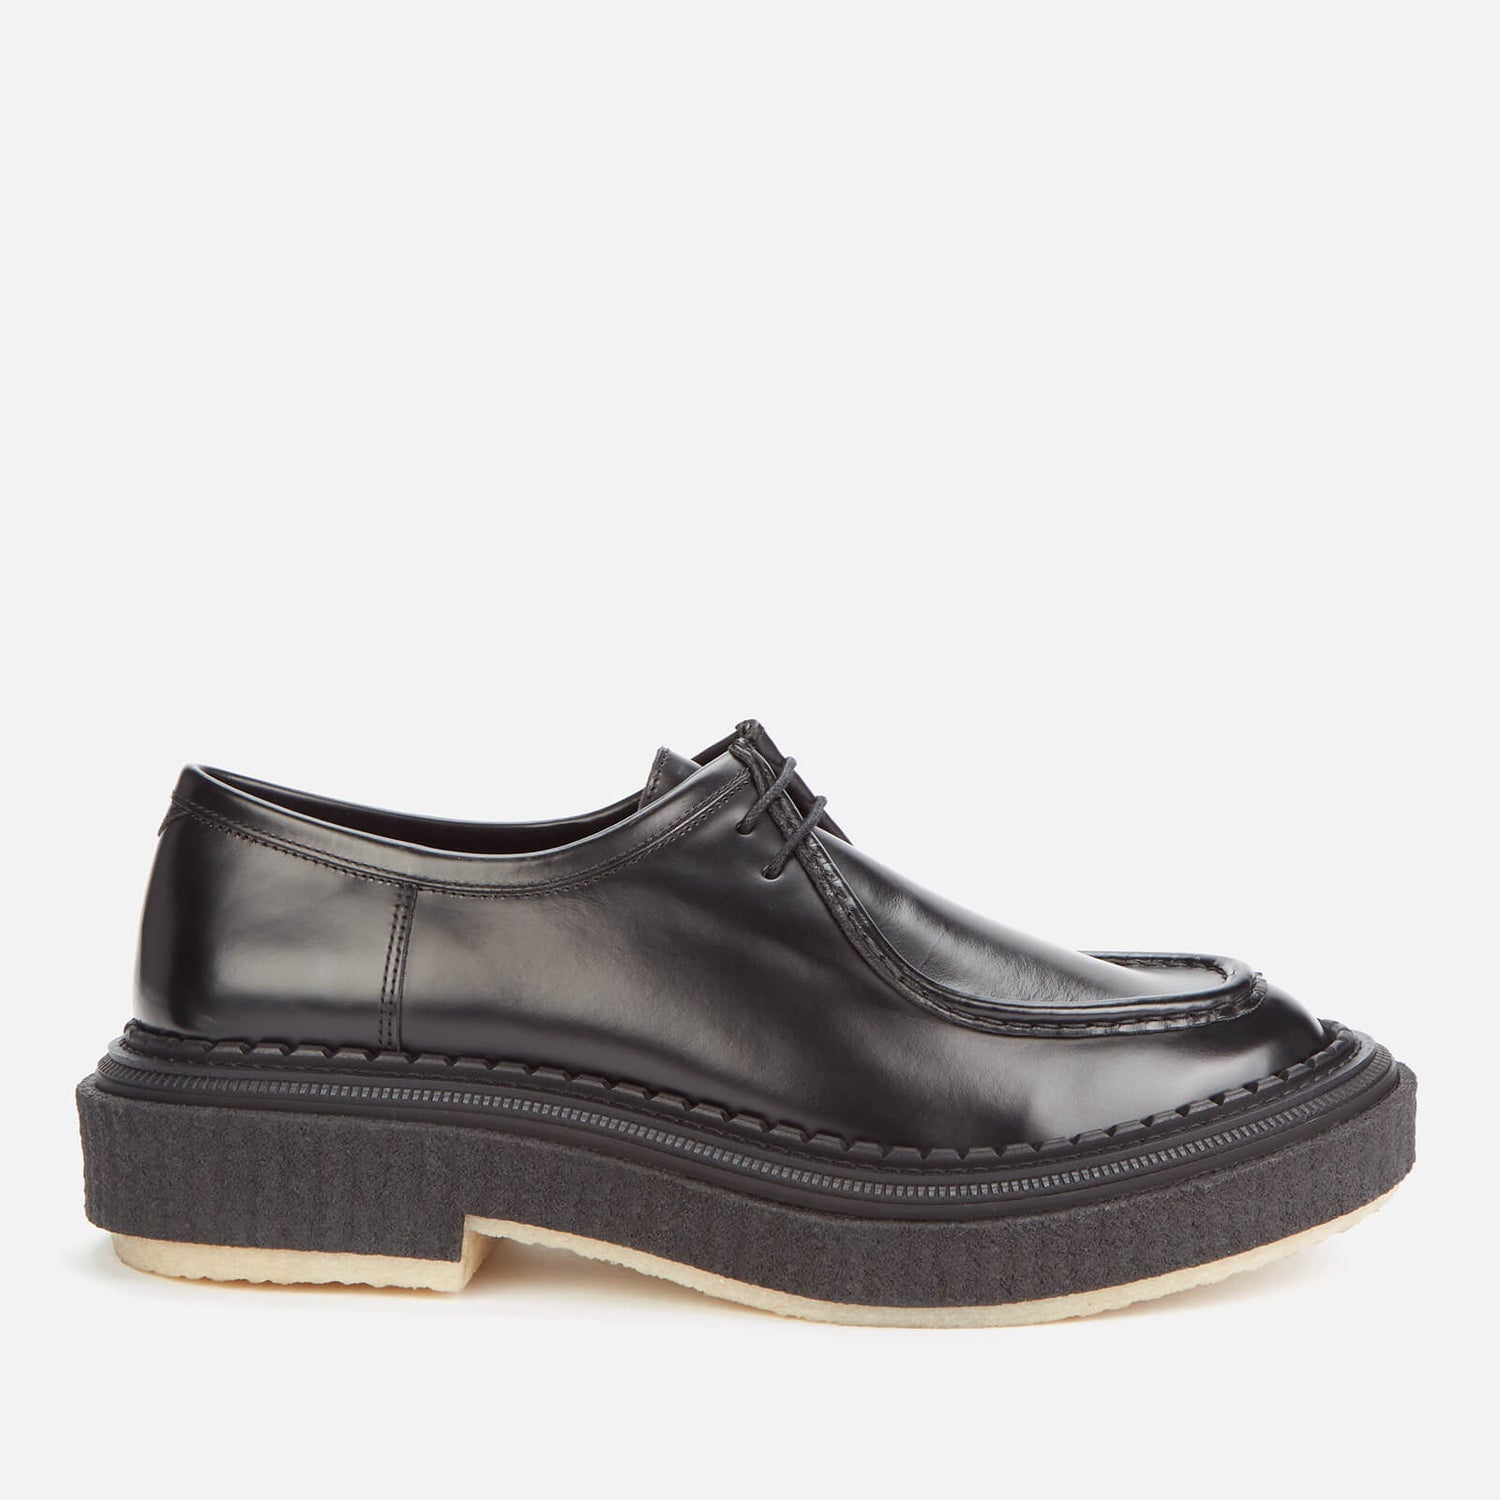 Adieu Men's Type 153 Leather Crepe Sole 2-Eye Shoes - Black - UK 10